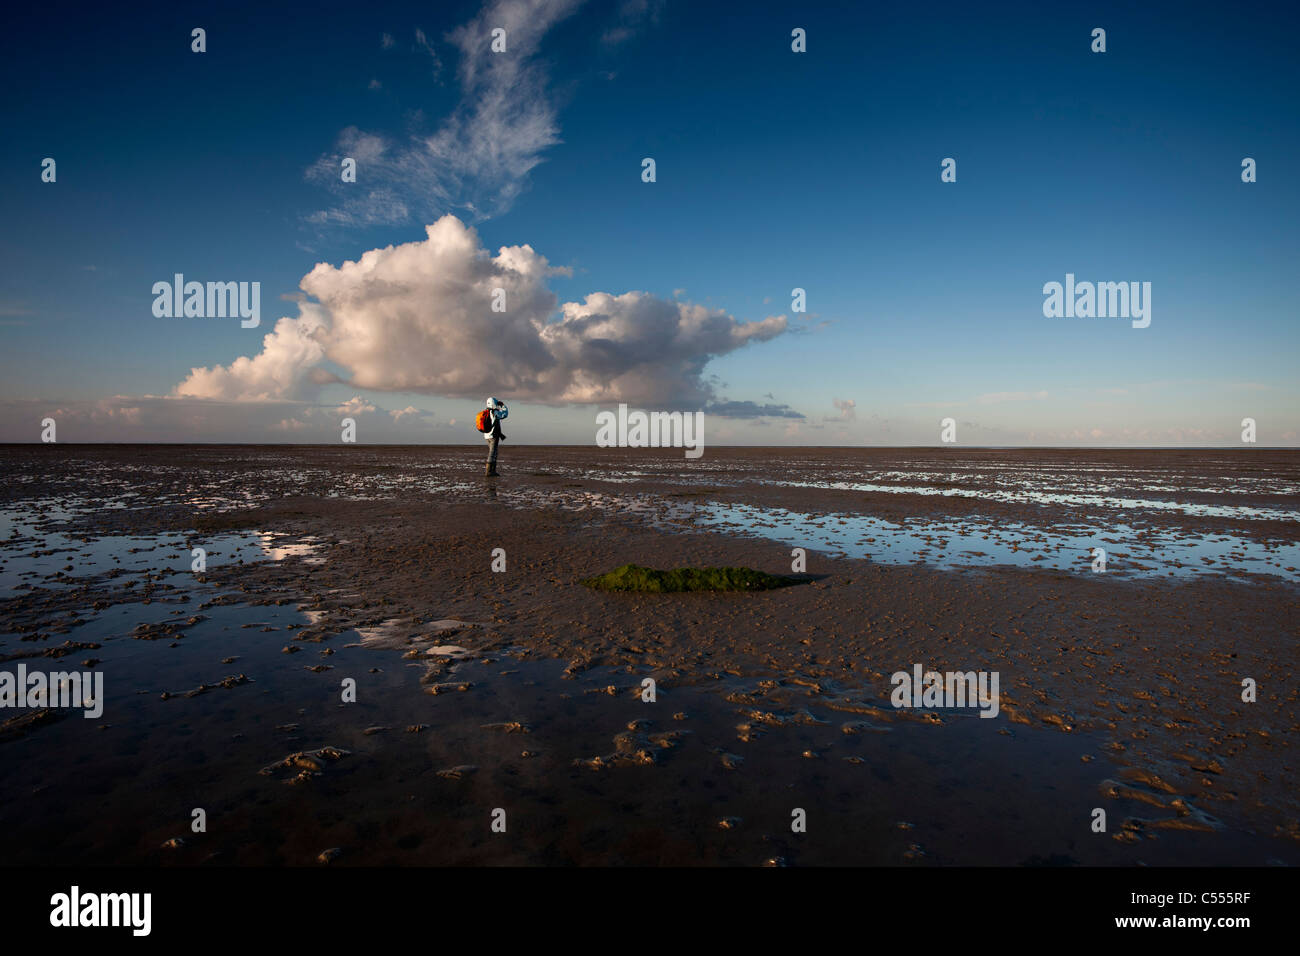 Die Niederlande, Ballum, Ameland Insel, gehört zum Wadden Sea Islands. Frau unter Bild, Watten. Sunrise. Stockfoto